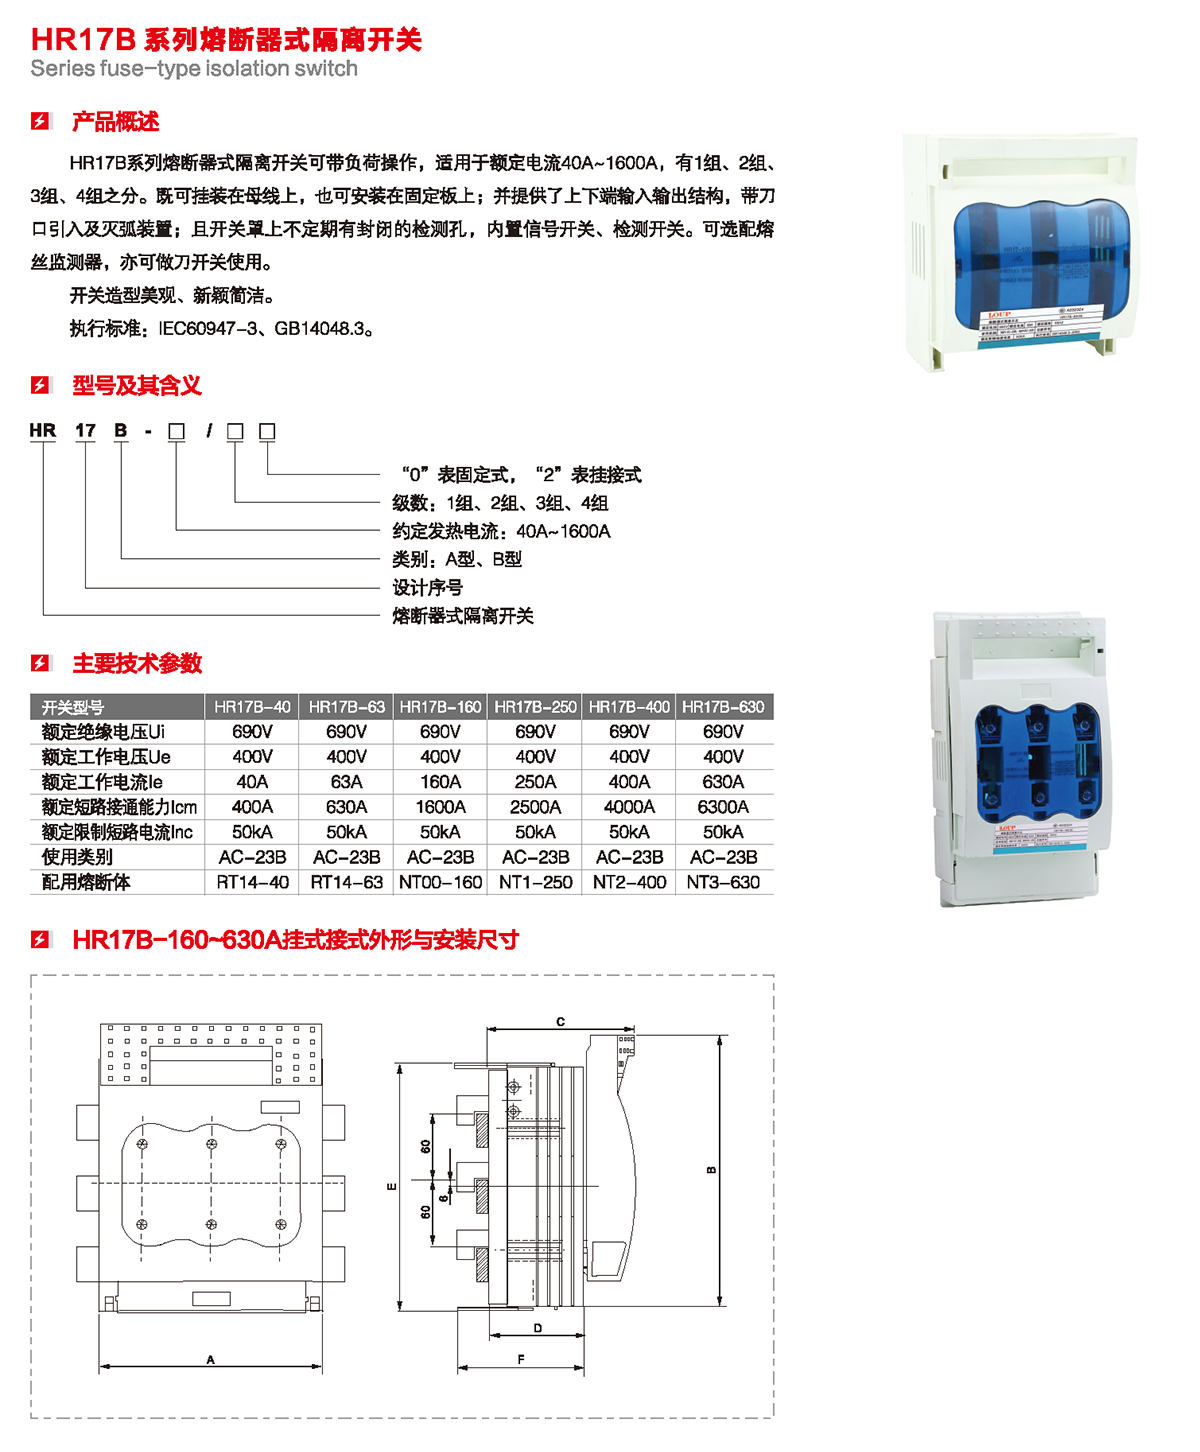 HR17B系列熔斷器式隔離開關產品概述、型號含義、技術參數